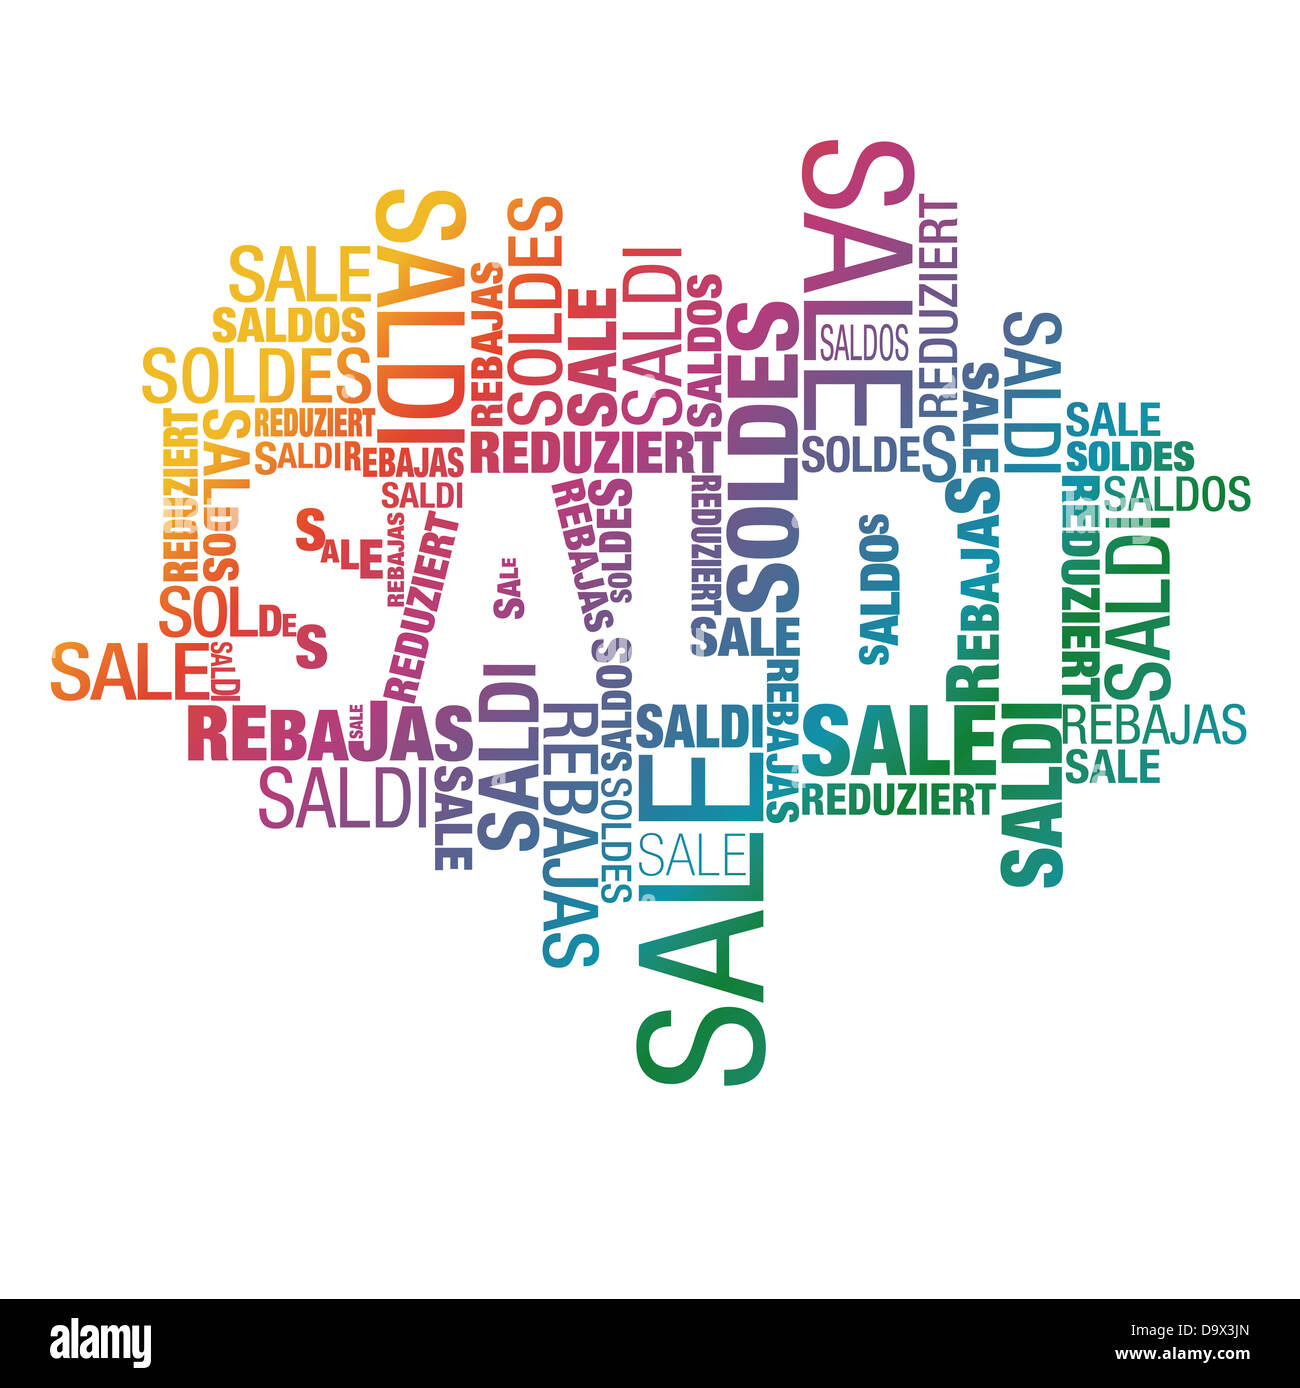 Saldi (vente) gradient international remise publicité nuage de mots Banque D'Images